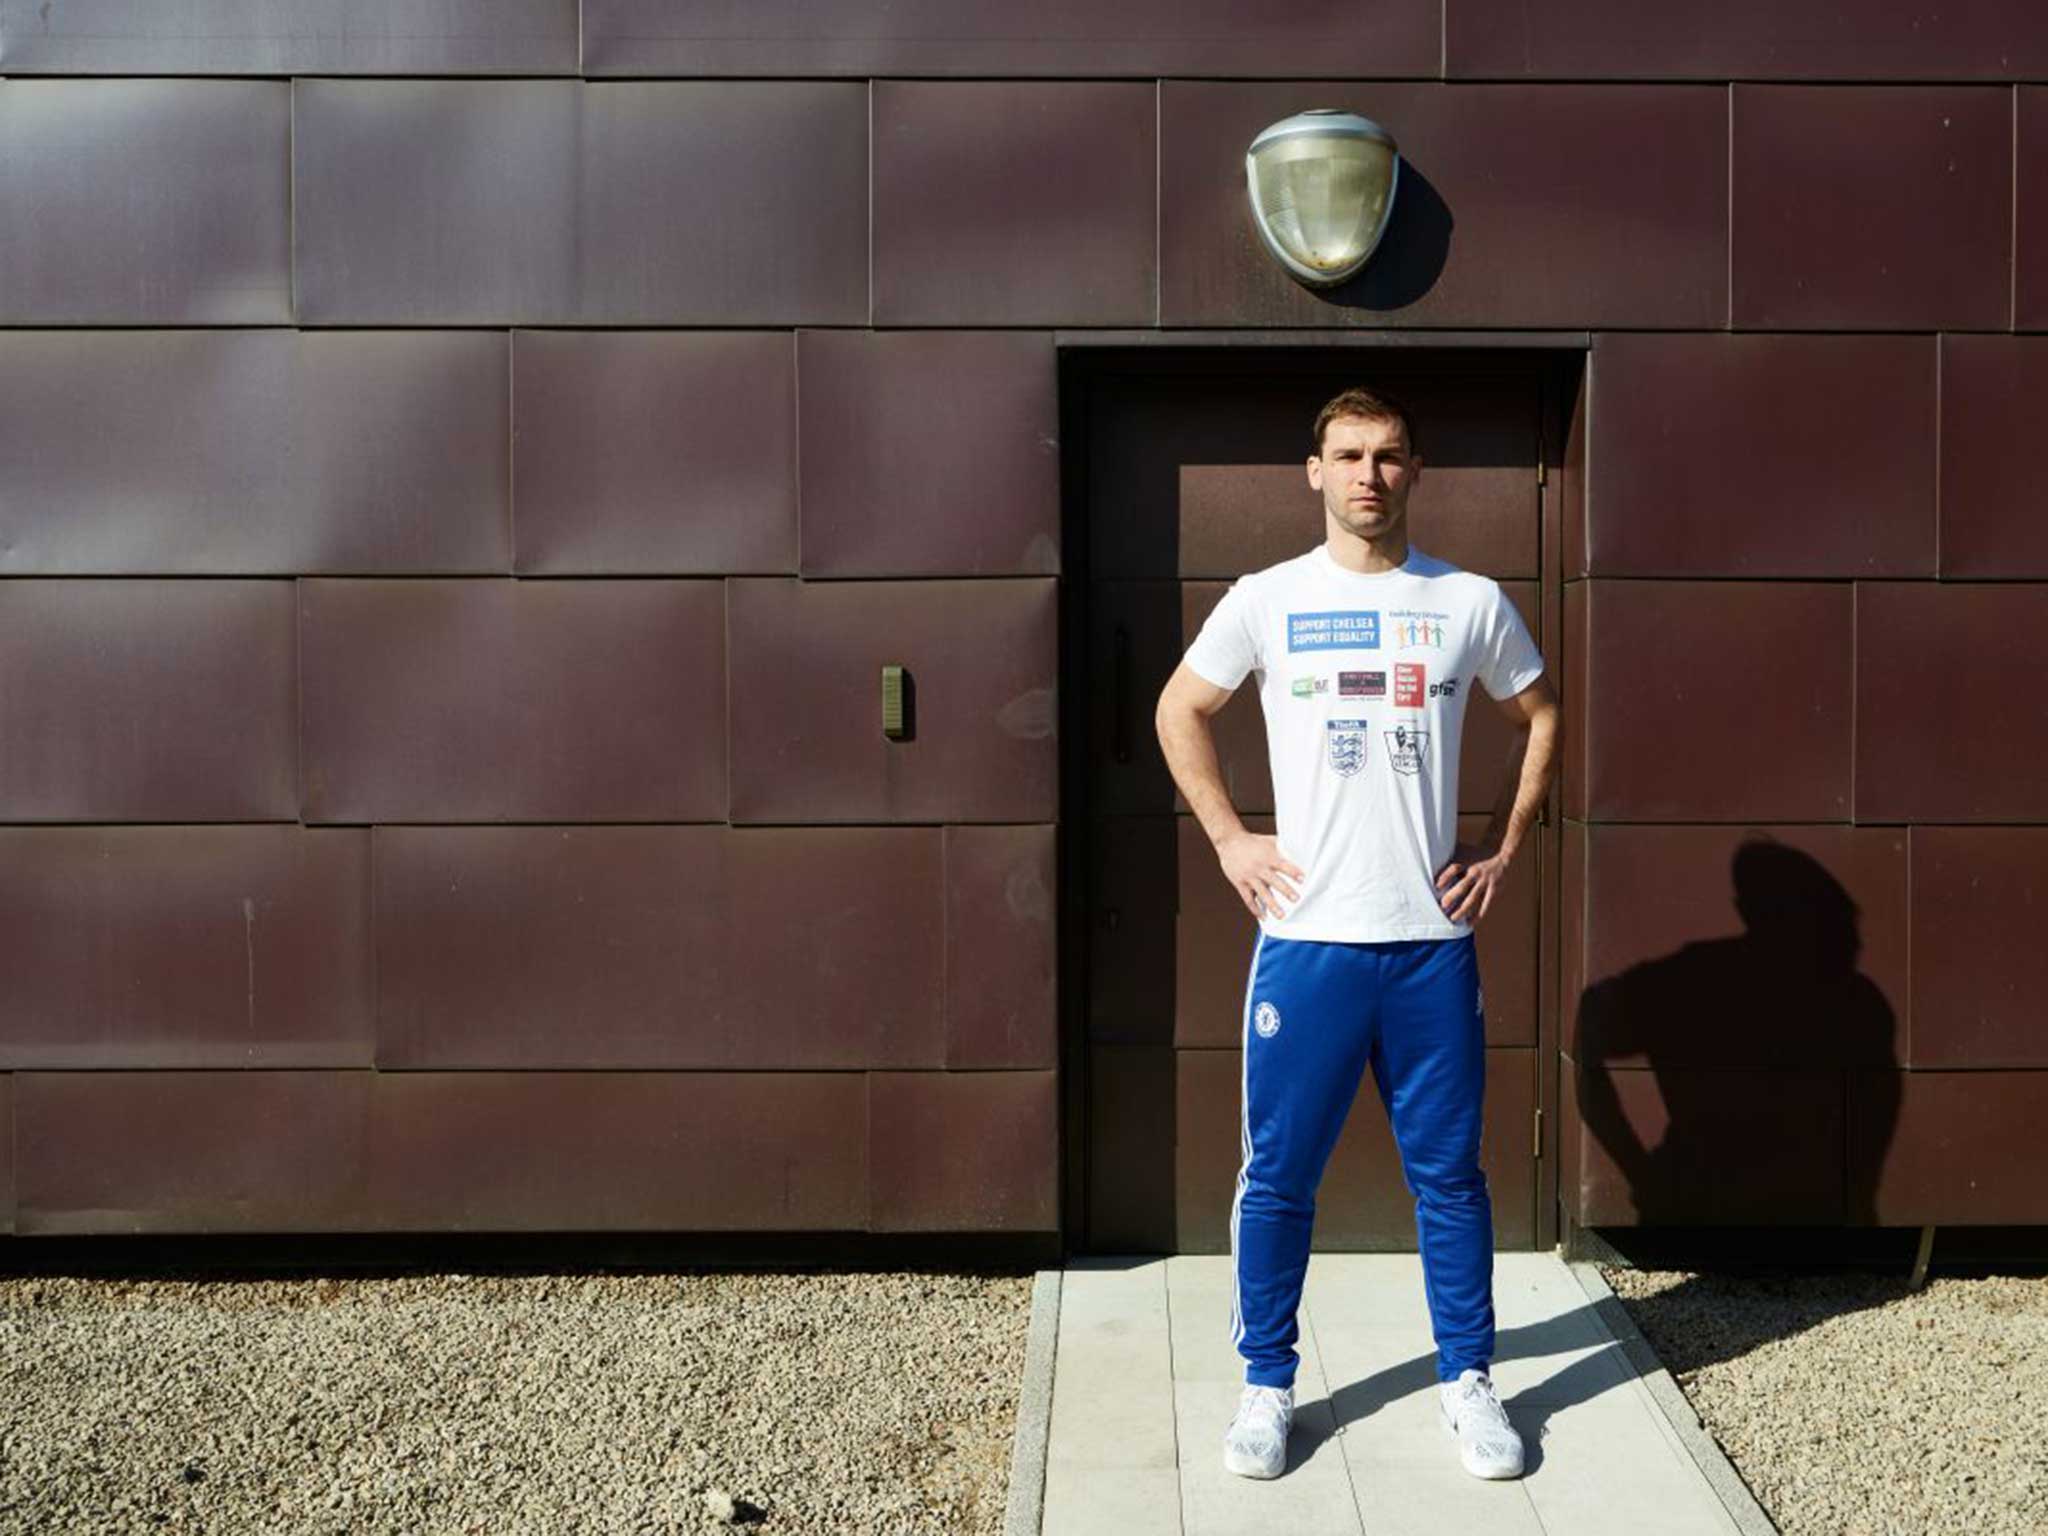 Branislav Ivanovic, Chelsea defender